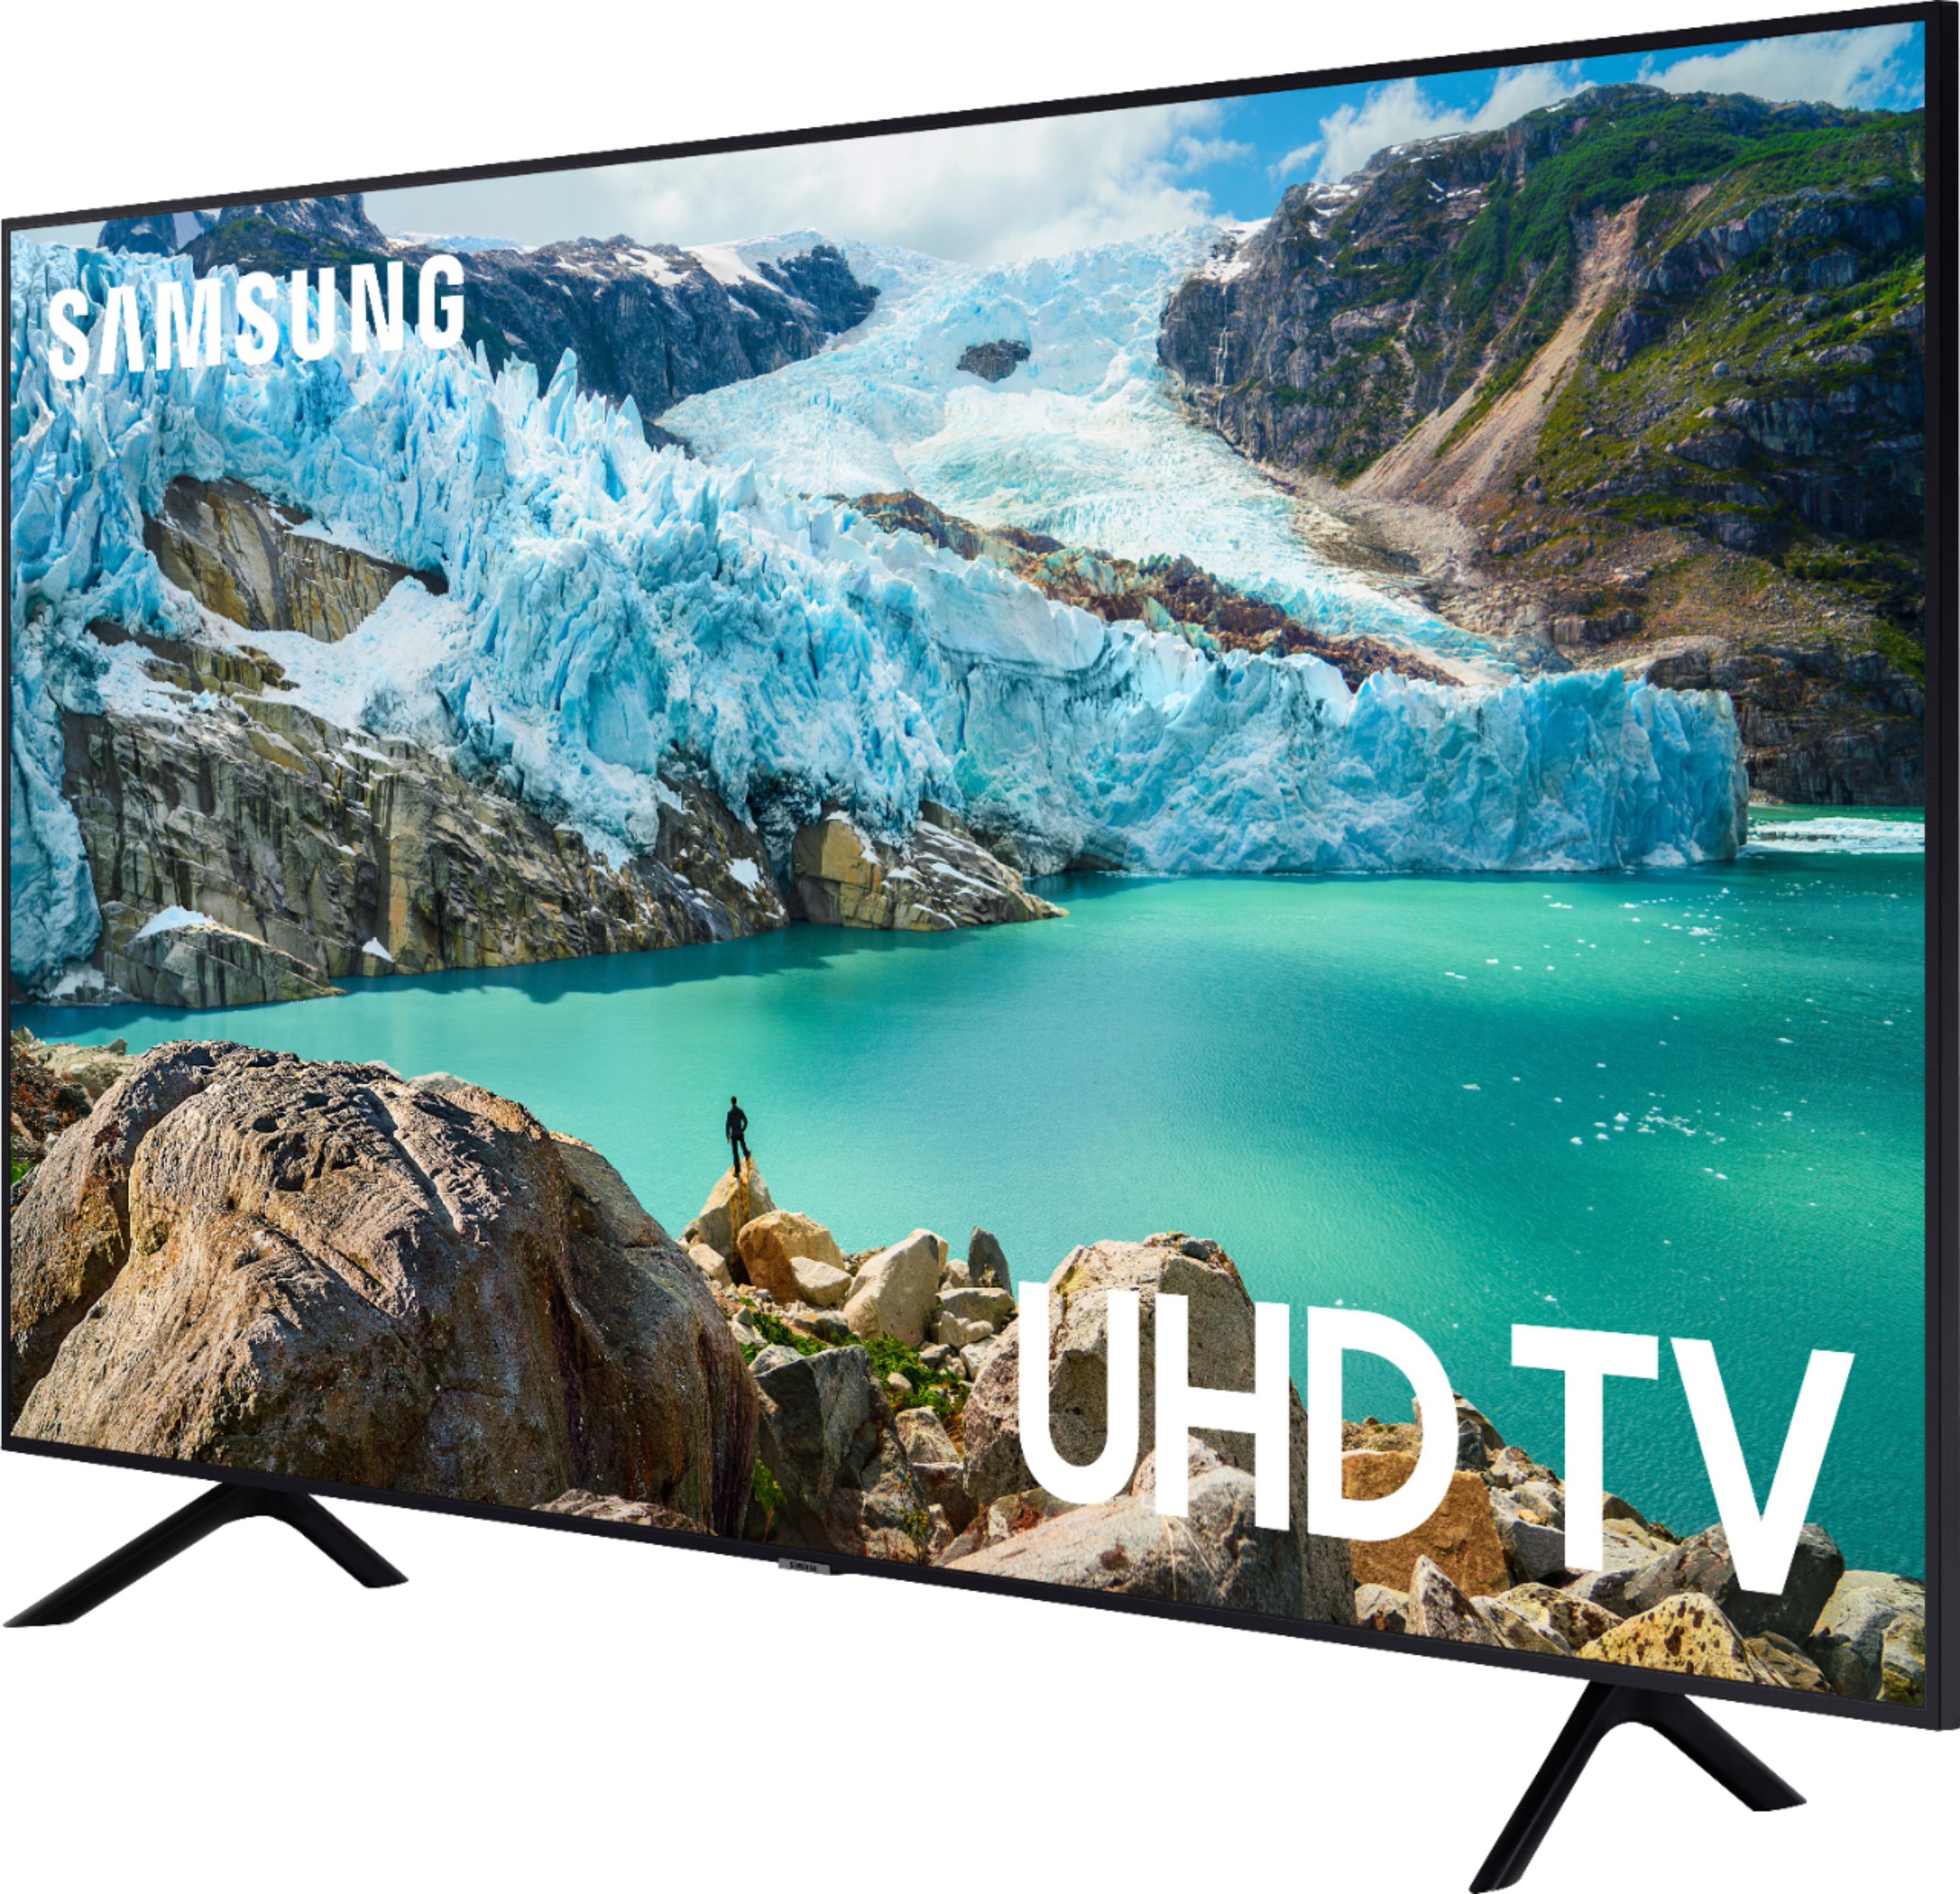 Samsung 70" Class Series LED 4K UHD Smart Tizen TV UN70NU6900FXZA - Best Buy